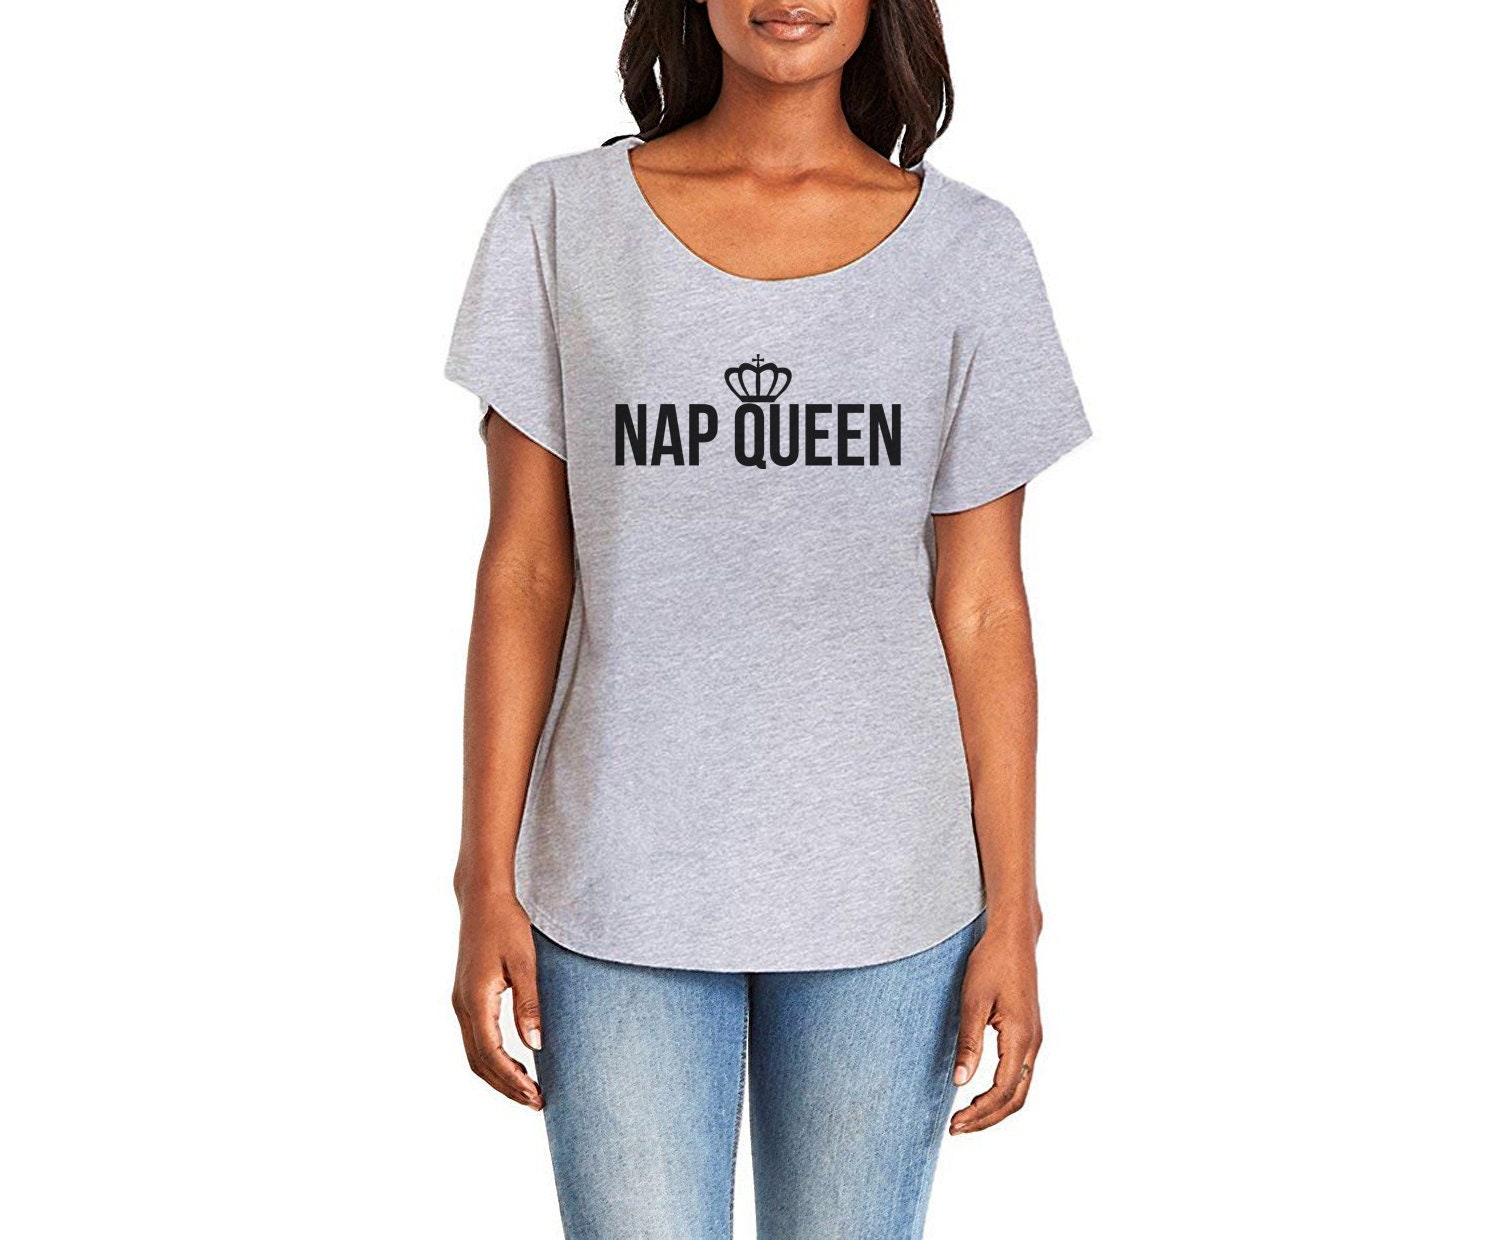 Nap Queen Shirt Nap Queen Sarcasm Shirt Attitude Shirt | Etsy